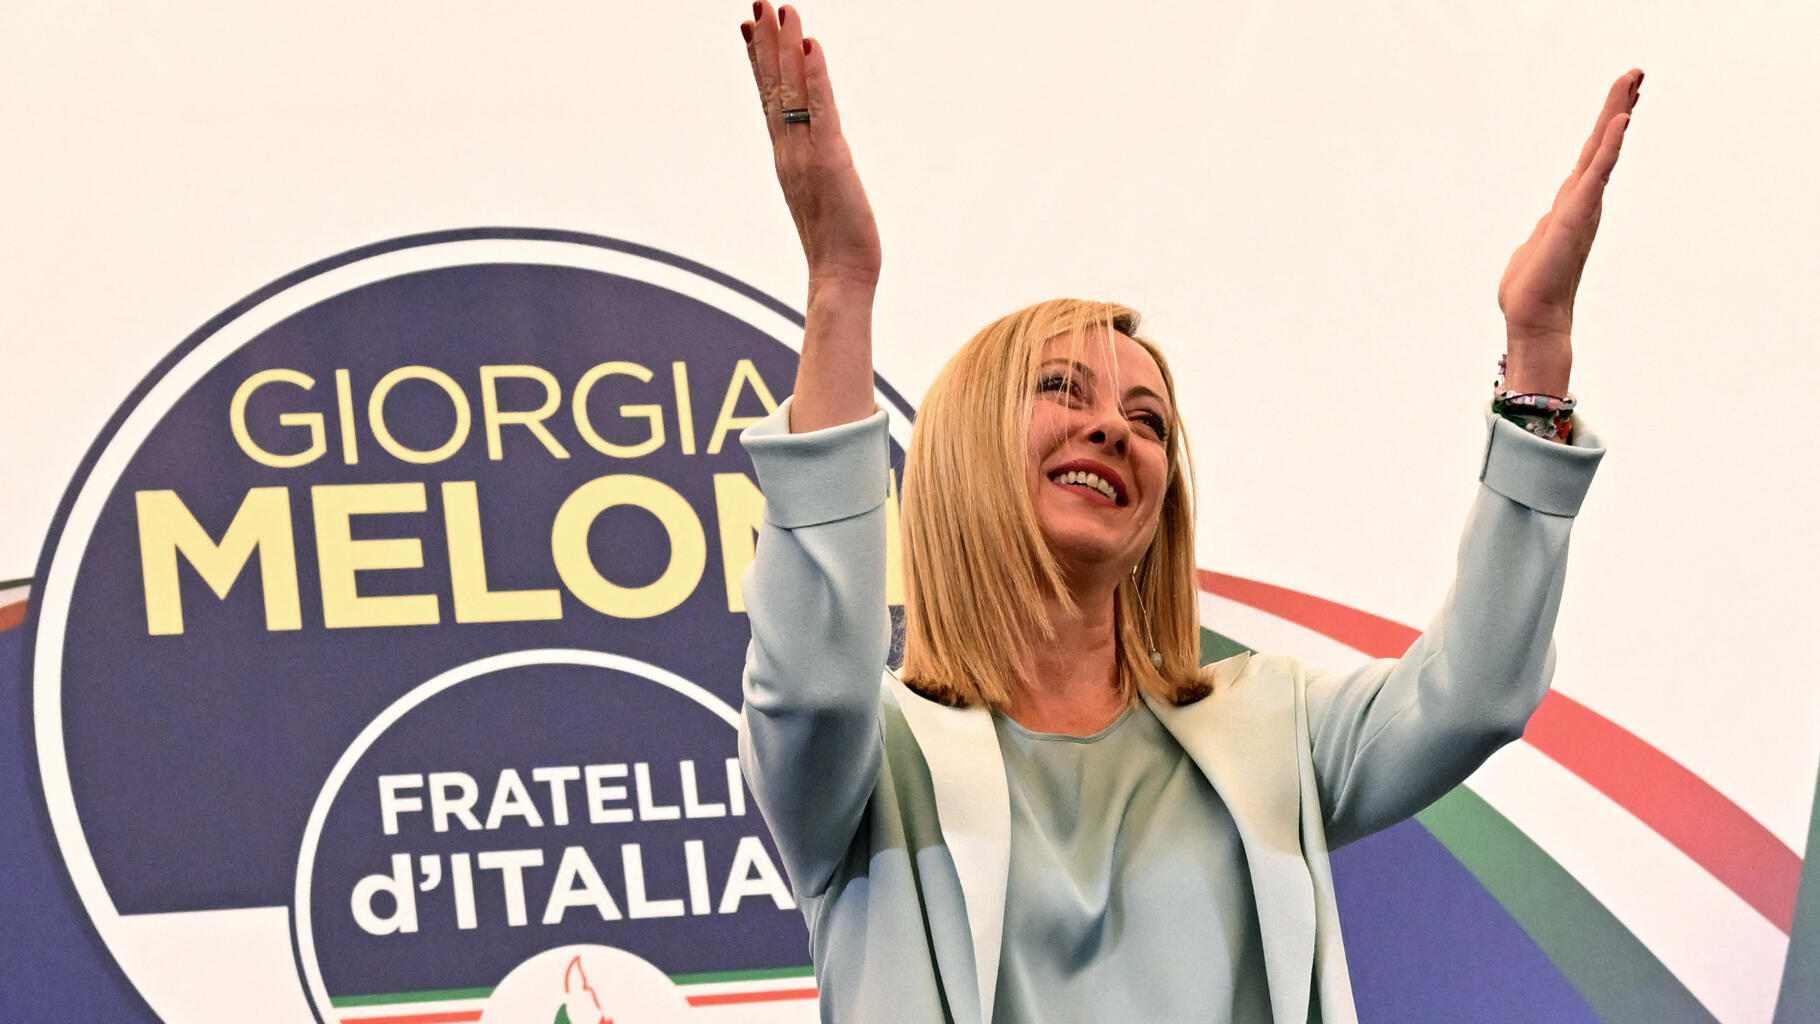 In Italien muss Georgia Meloni mit der Regierungsbildung warten